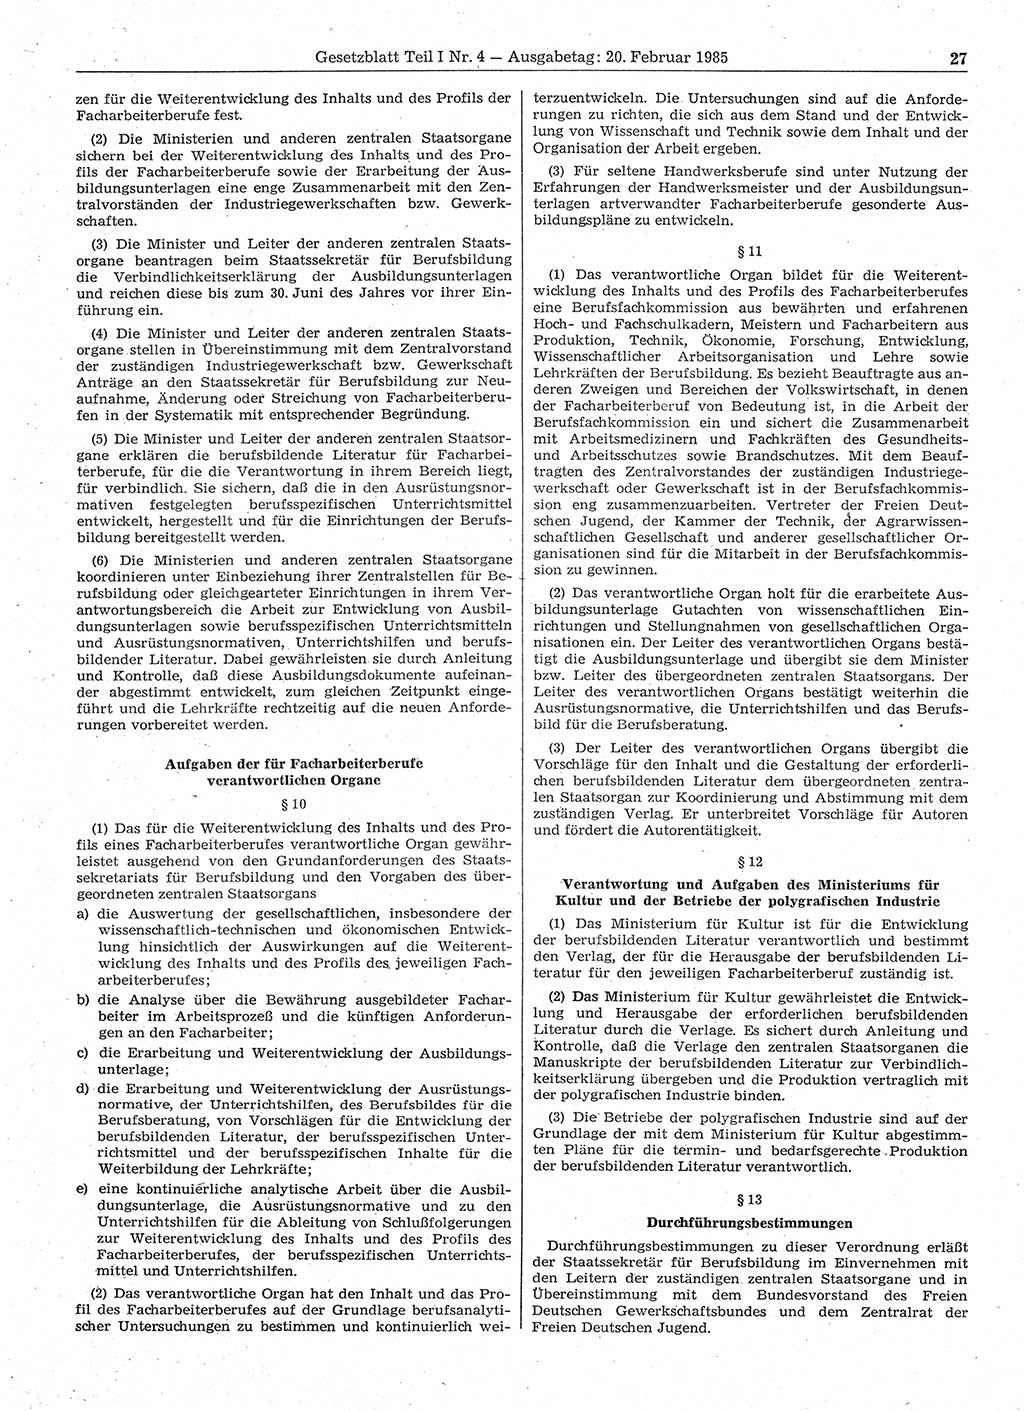 Gesetzblatt (GBl.) der Deutschen Demokratischen Republik (DDR) Teil Ⅰ 1985, Seite 27 (GBl. DDR Ⅰ 1985, S. 27)